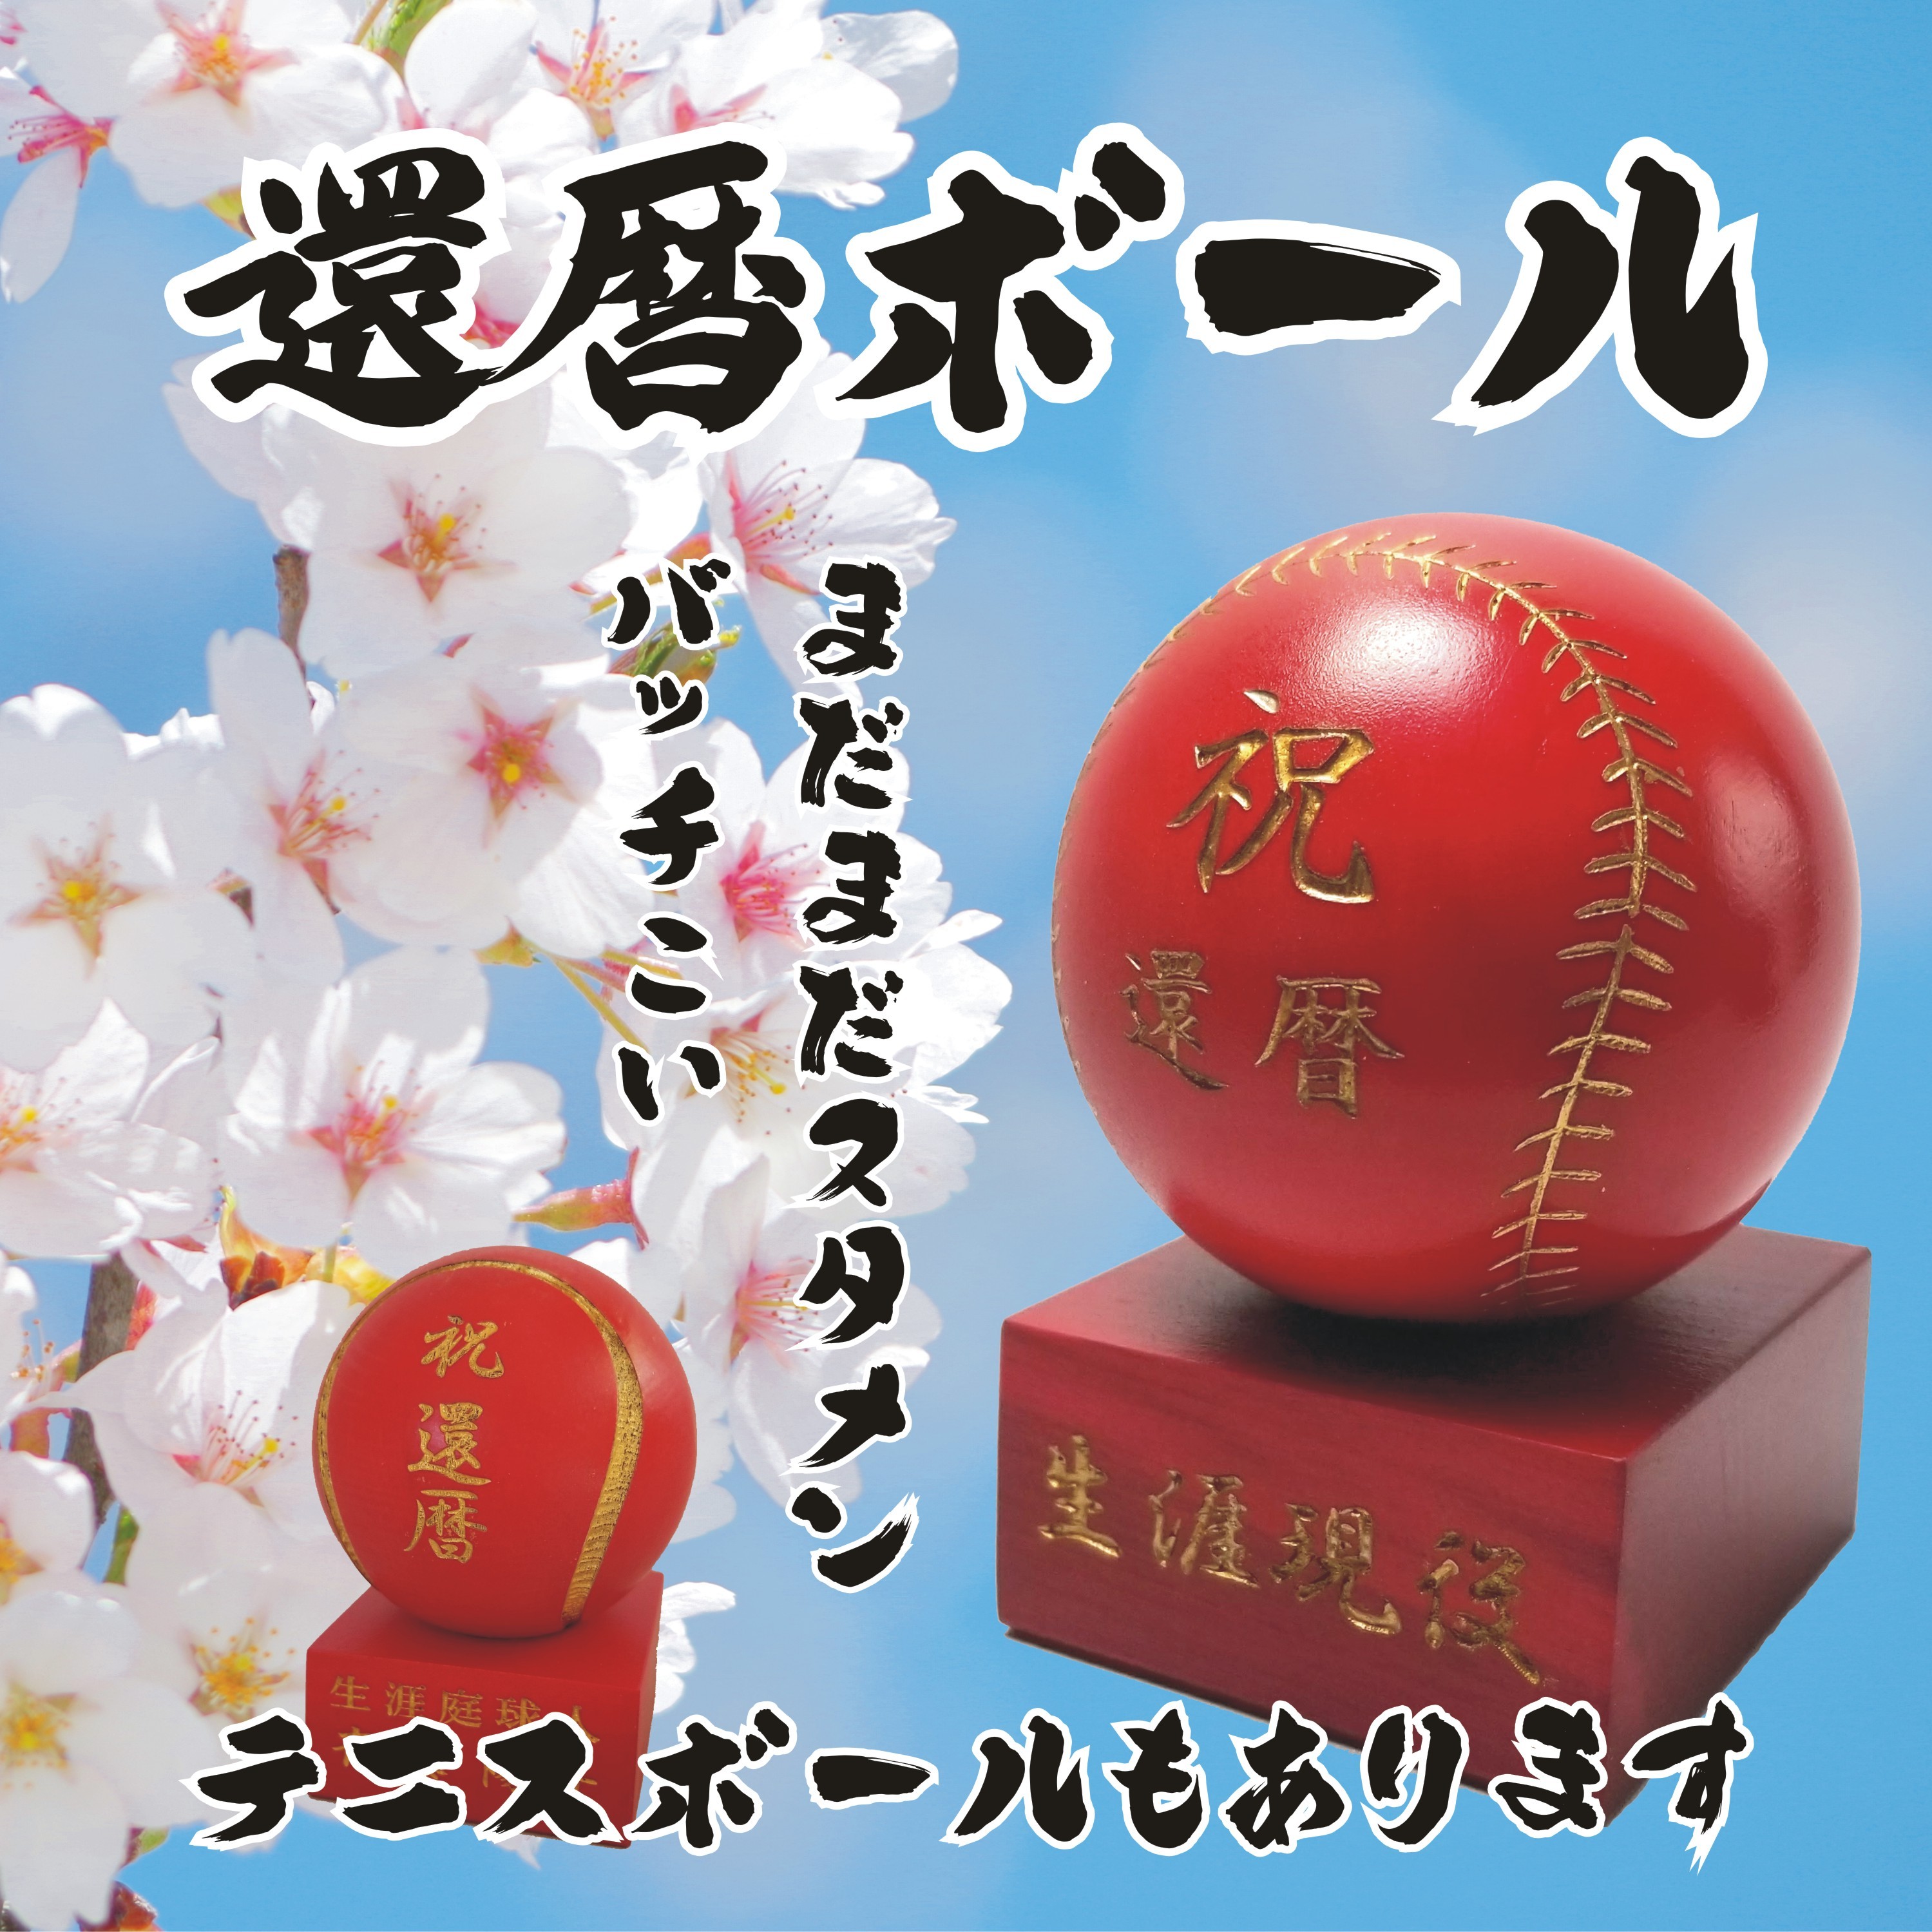 木製ボール 還暦祝い Iichi ハンドメイド クラフト作品 手仕事品の通販